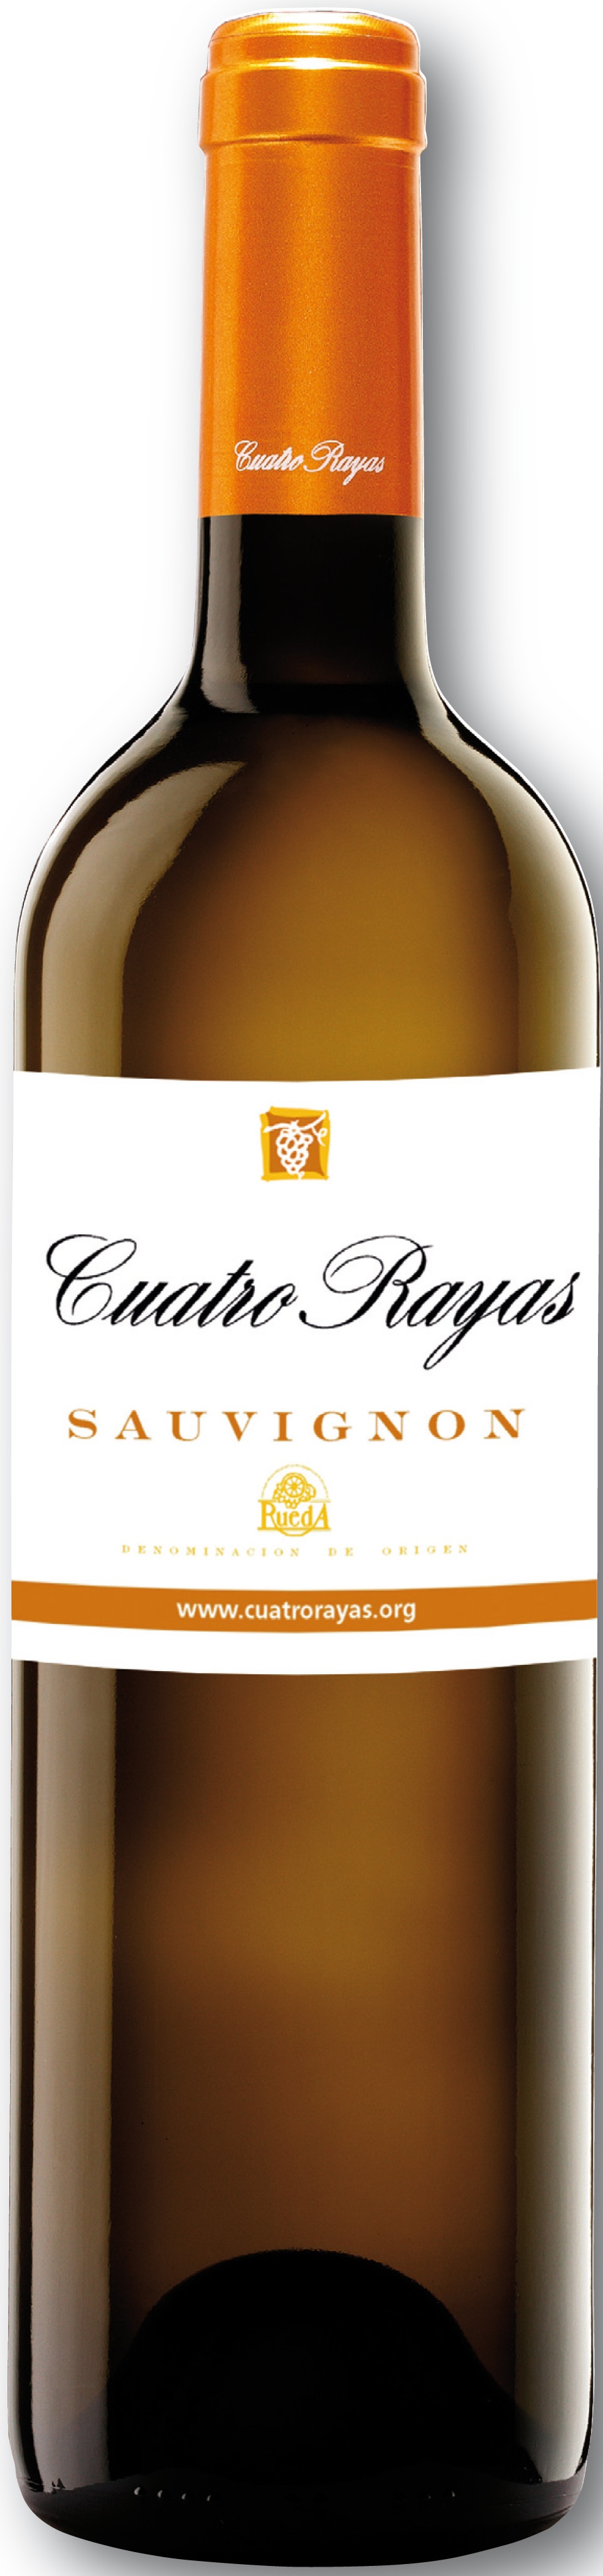 Bild von der Weinflasche Cuatro Rayas Sauvignon